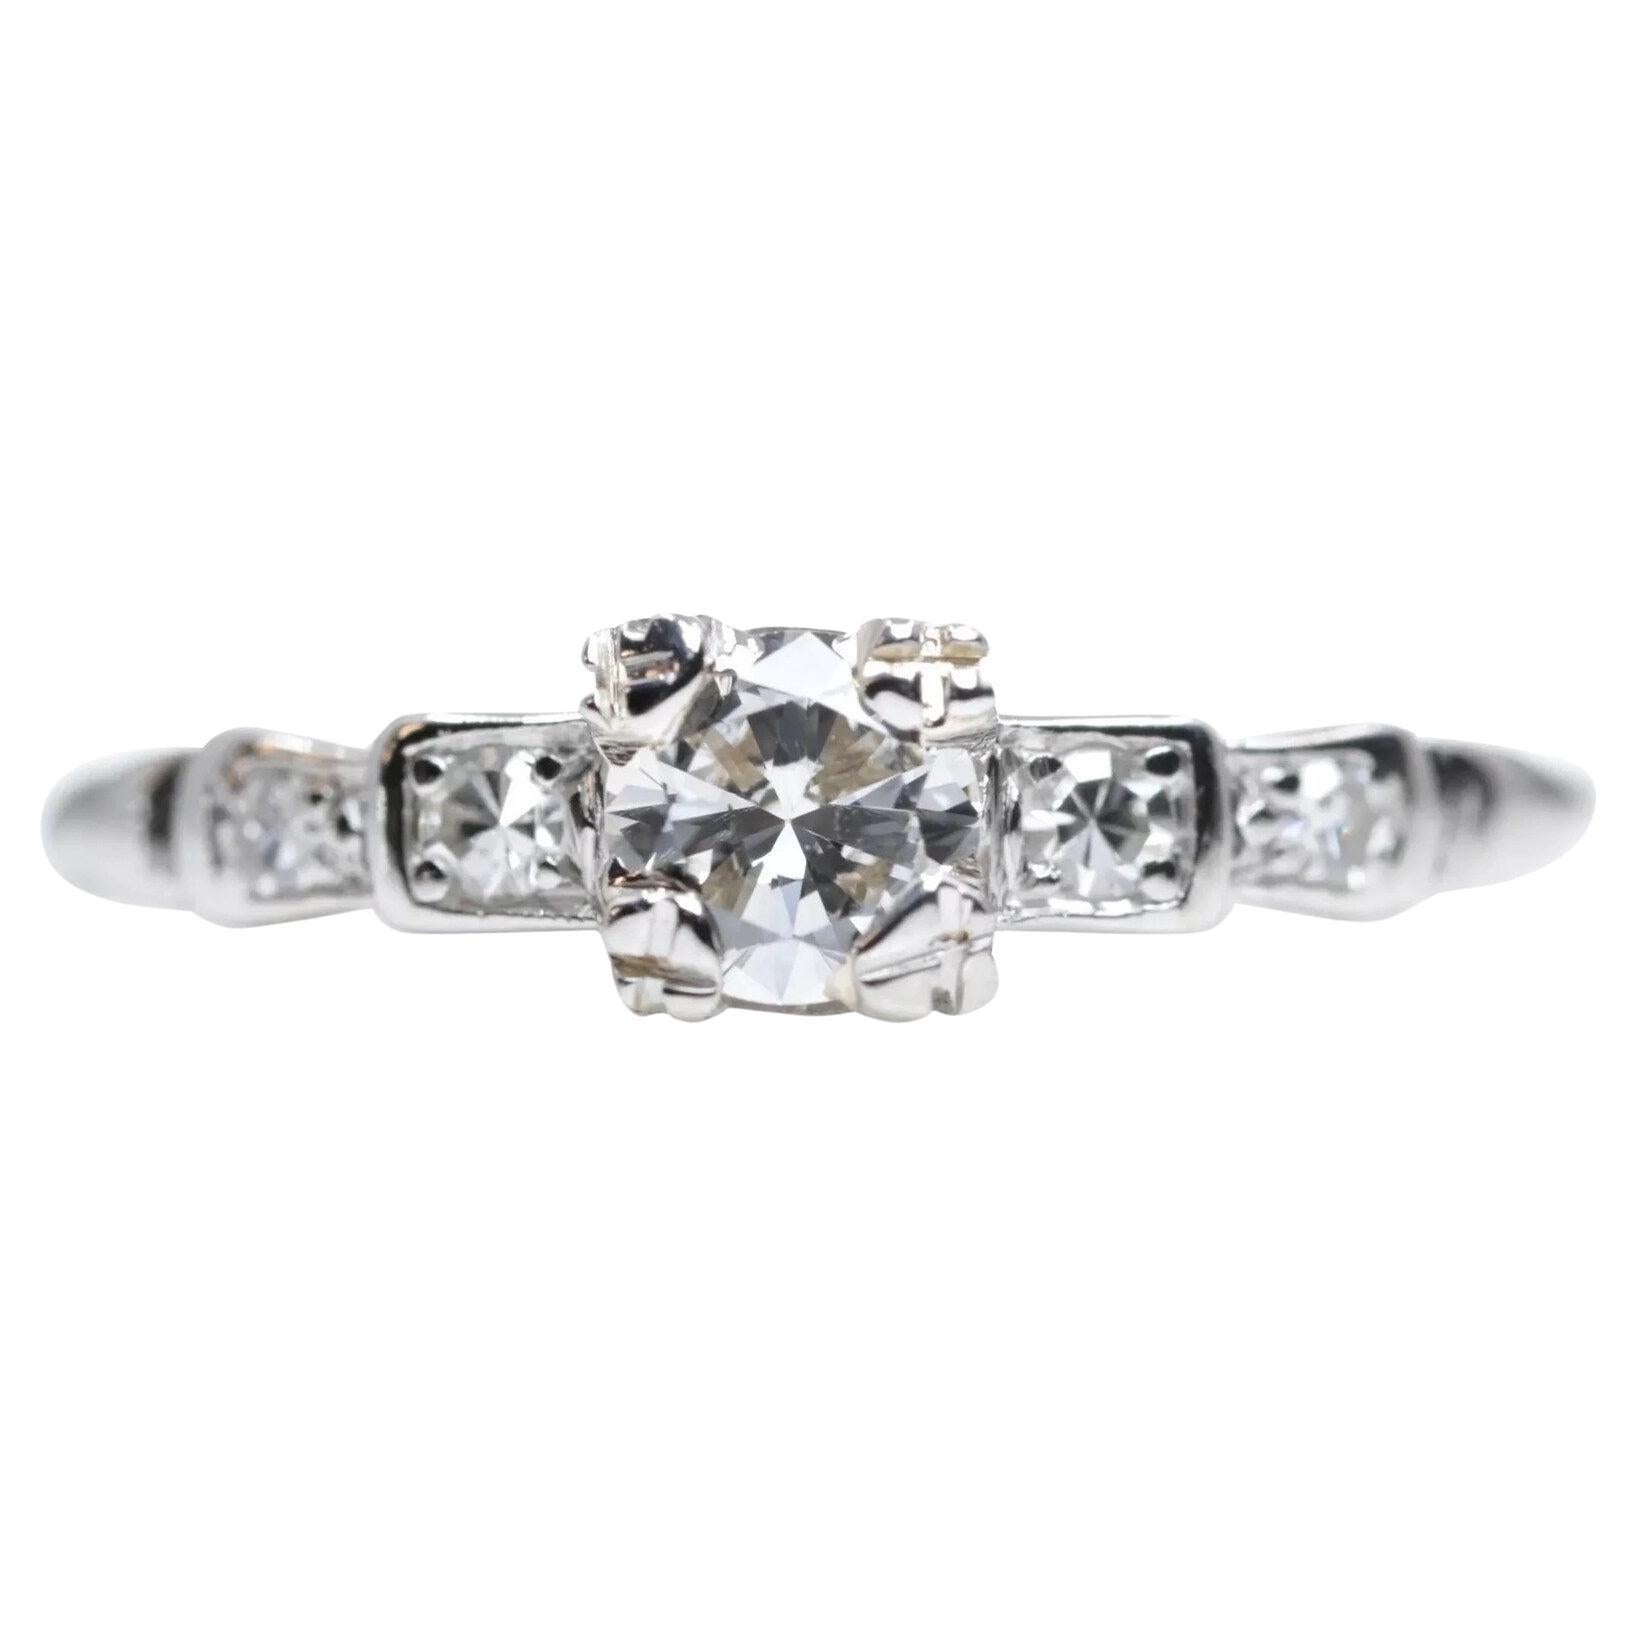 Art Deco 0.30ct European Cut Diamond Engagement Ring in Platinum